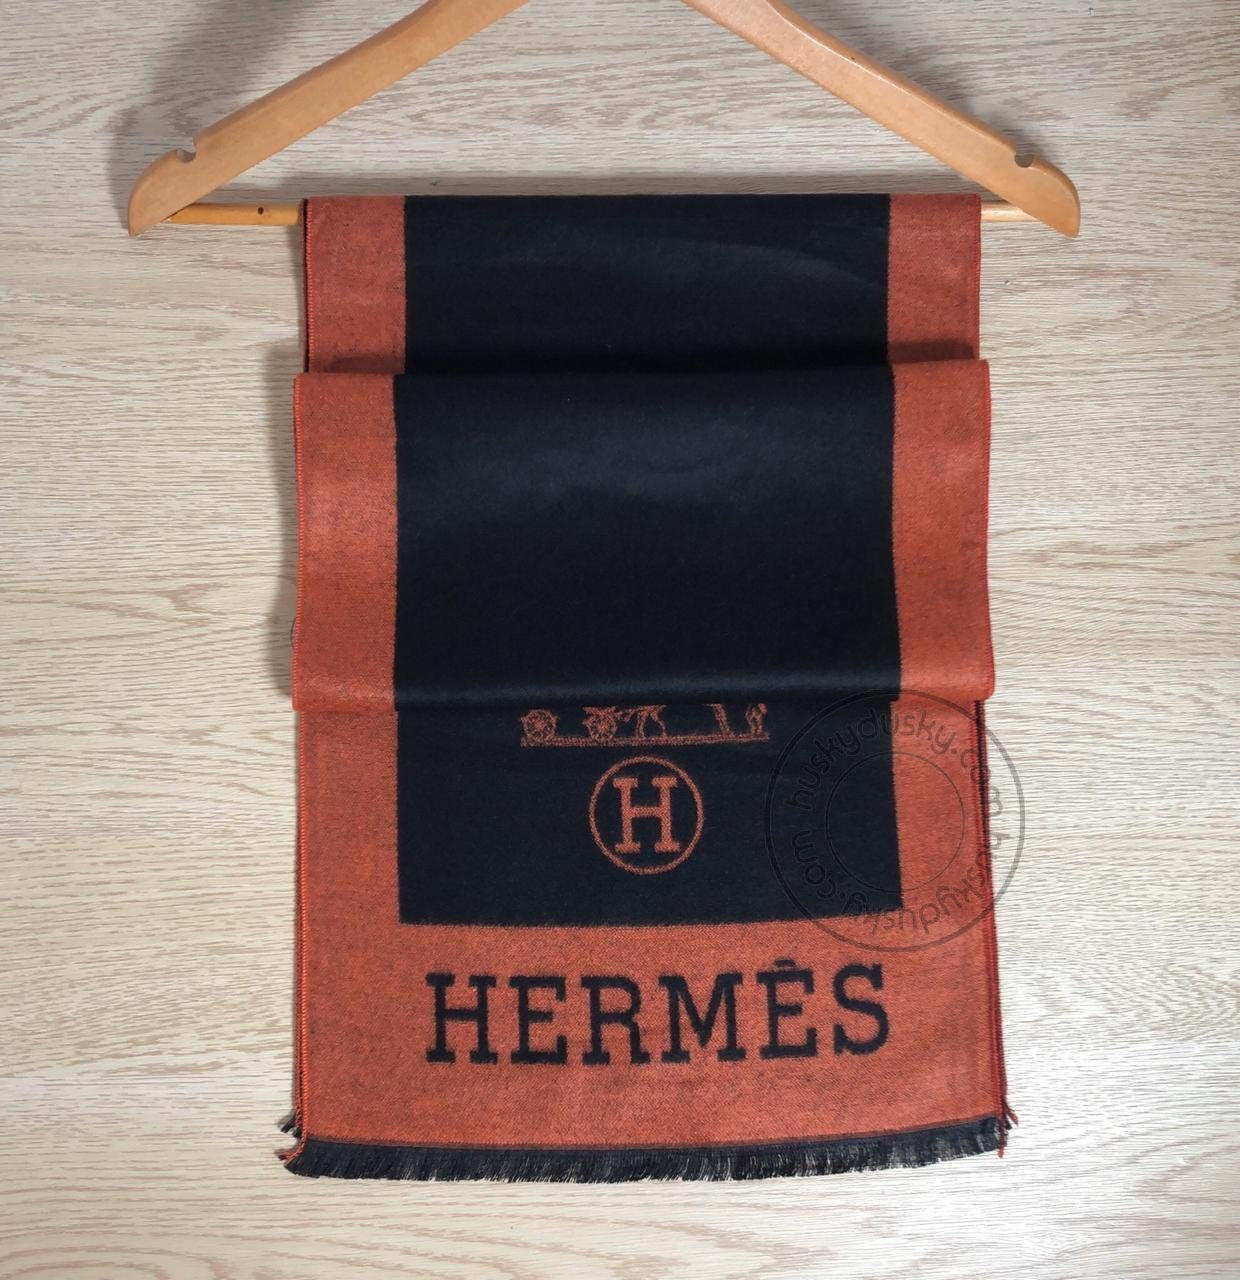 Hermes Branded Muffler black orange for men or women unisex MUFFLER-HR-01